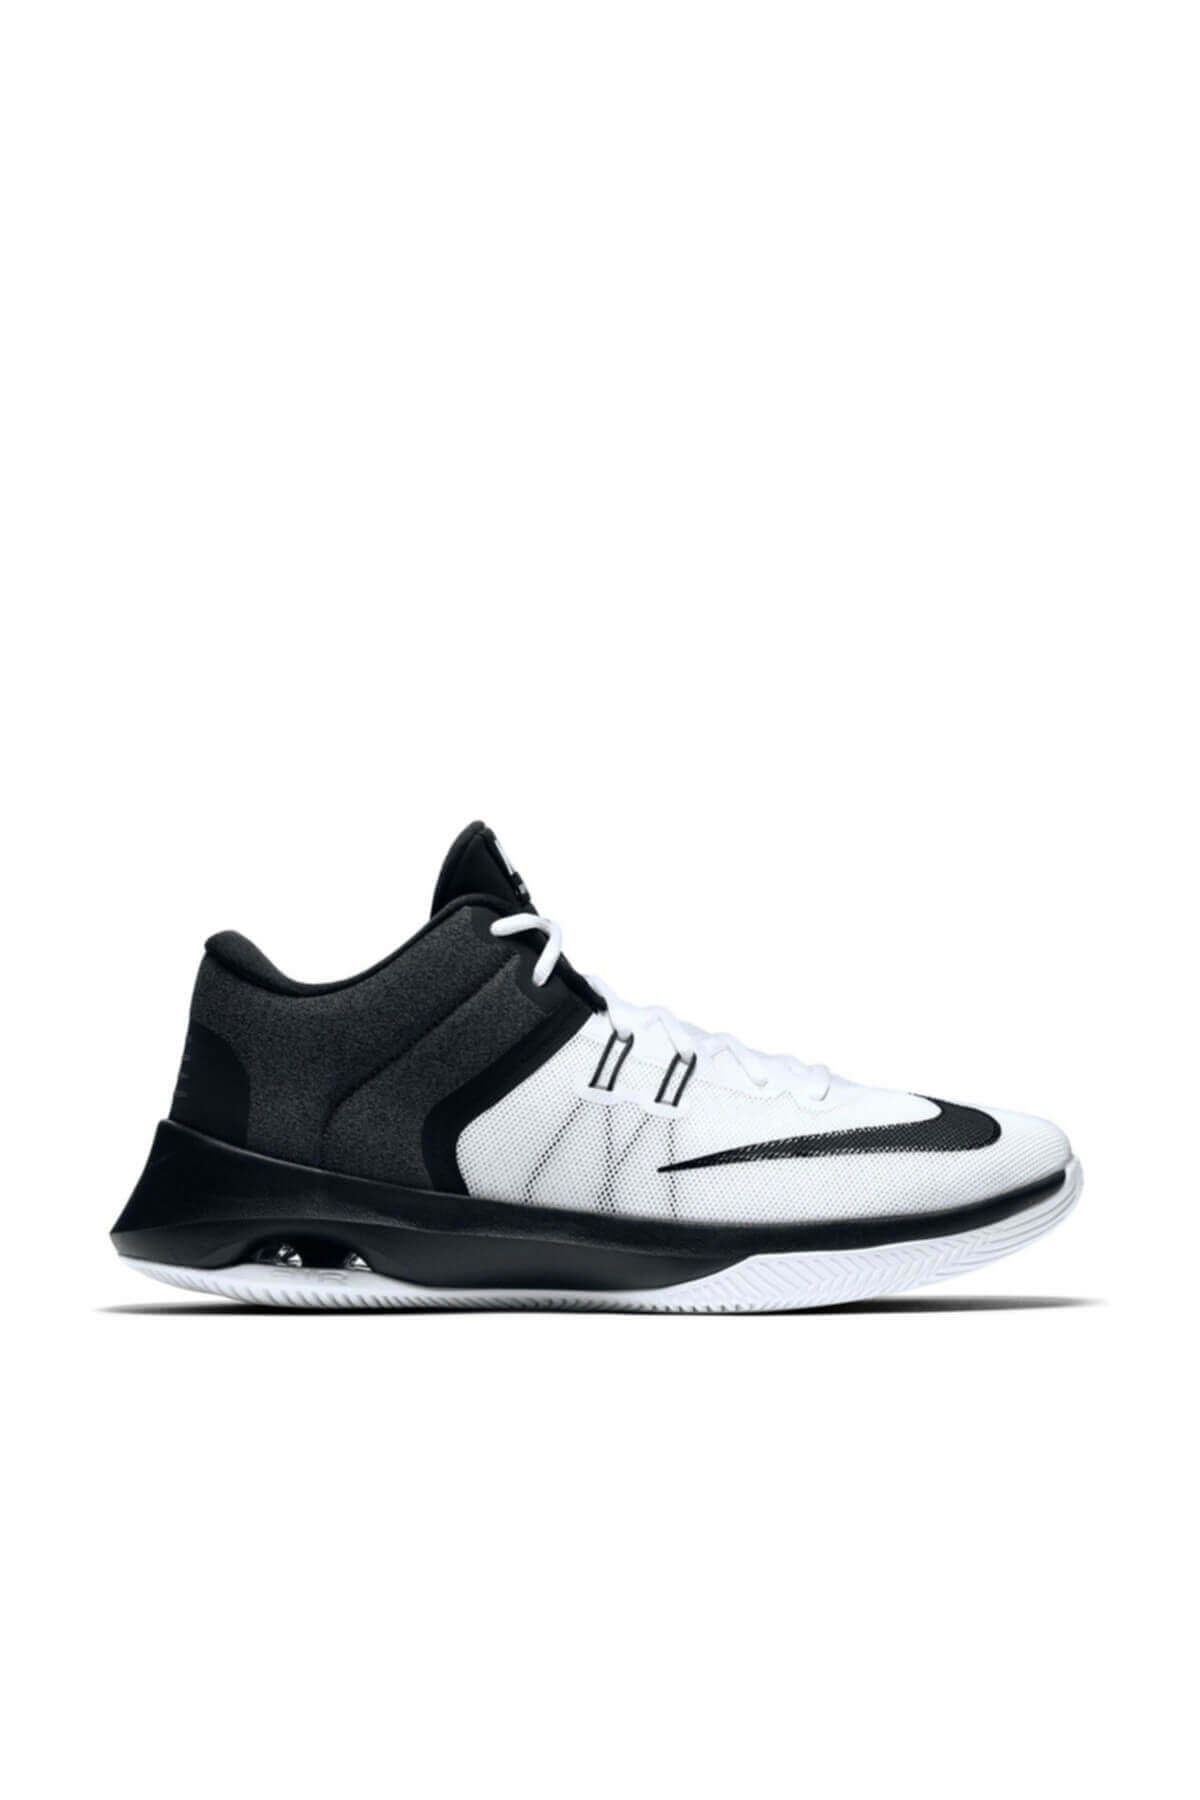 Nike Erkek Basketbol Ayakkabısı - Nike 921692-100 Aır Versıtıle Basketbol Ayakkabısı - 921692-100